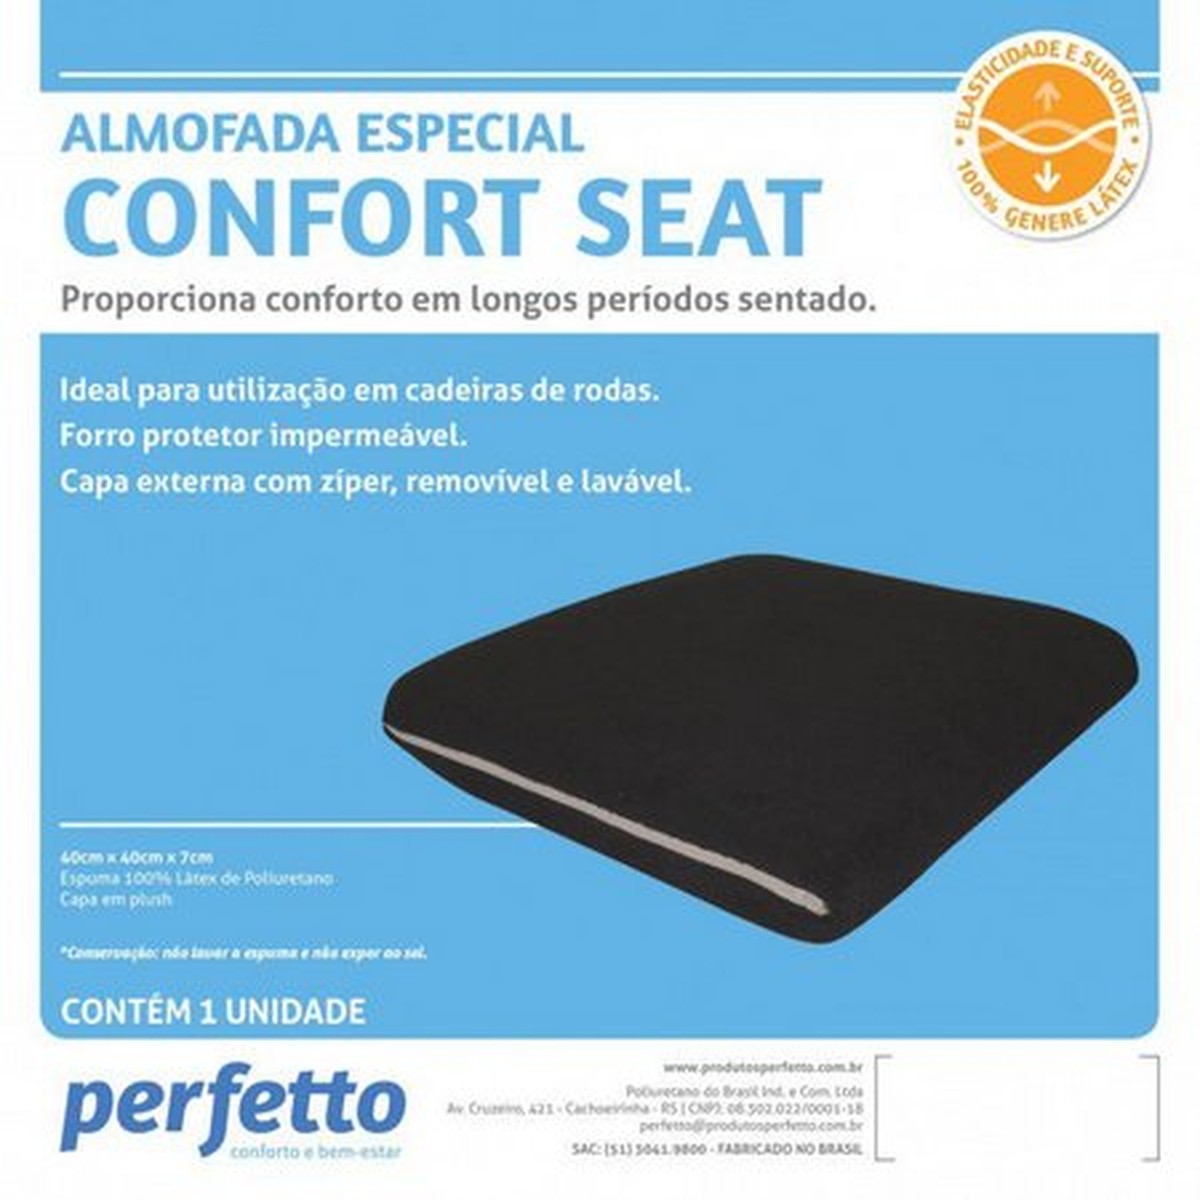 Foto do produto Almofada Especial Confort Seat  Perfetto 